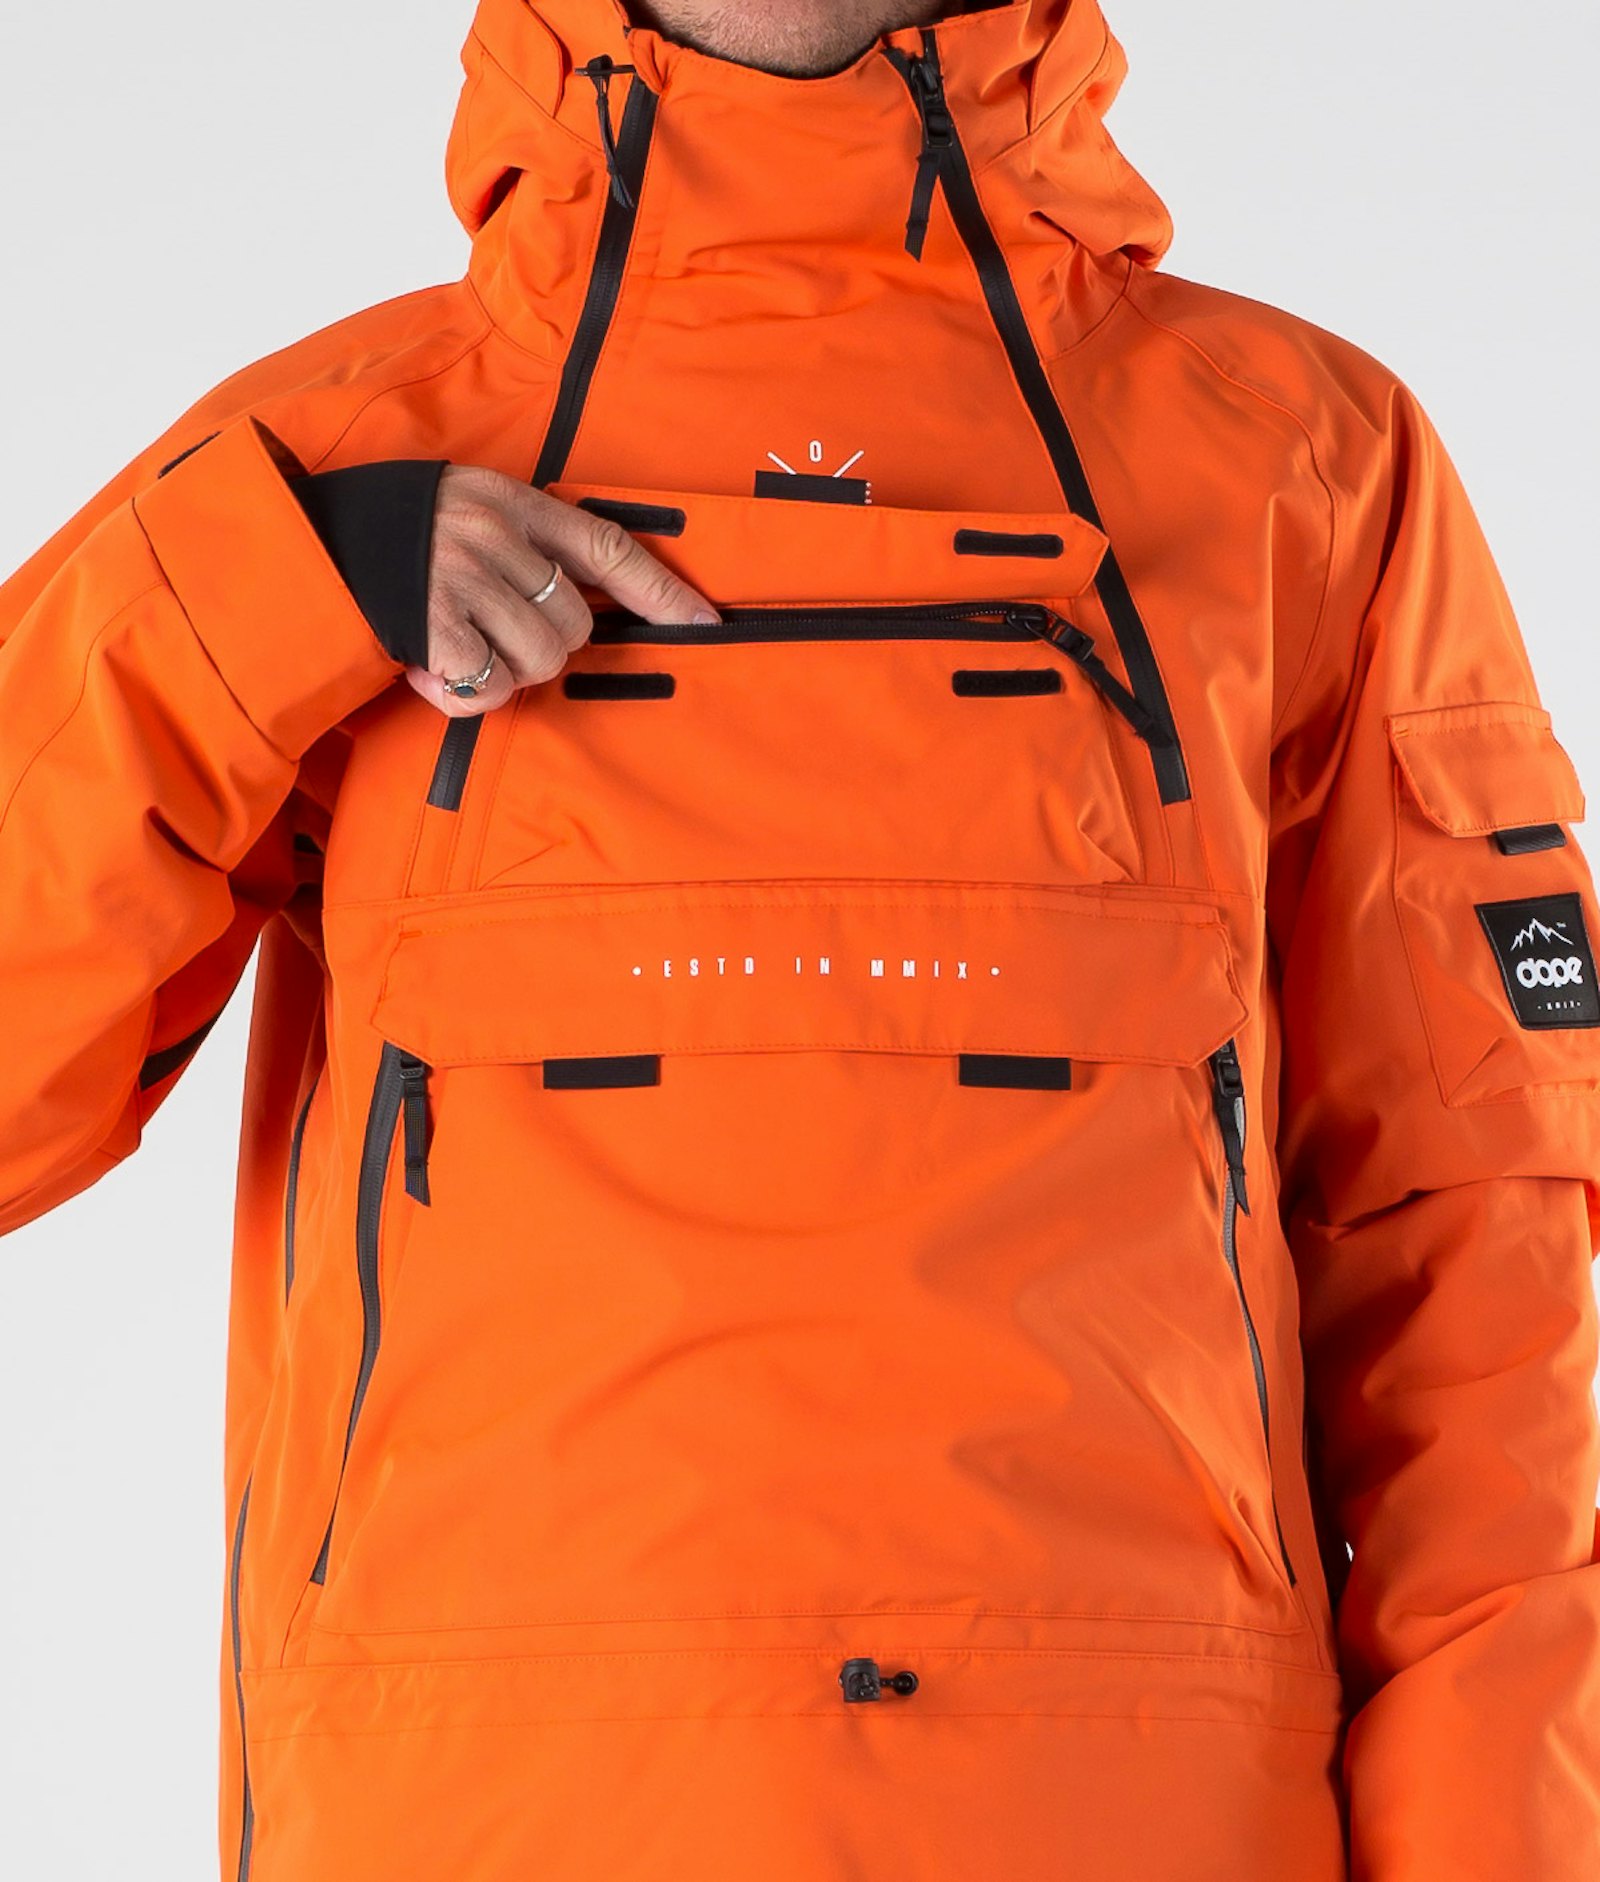 Akin 2019 Snowboardjacke Herren Orange